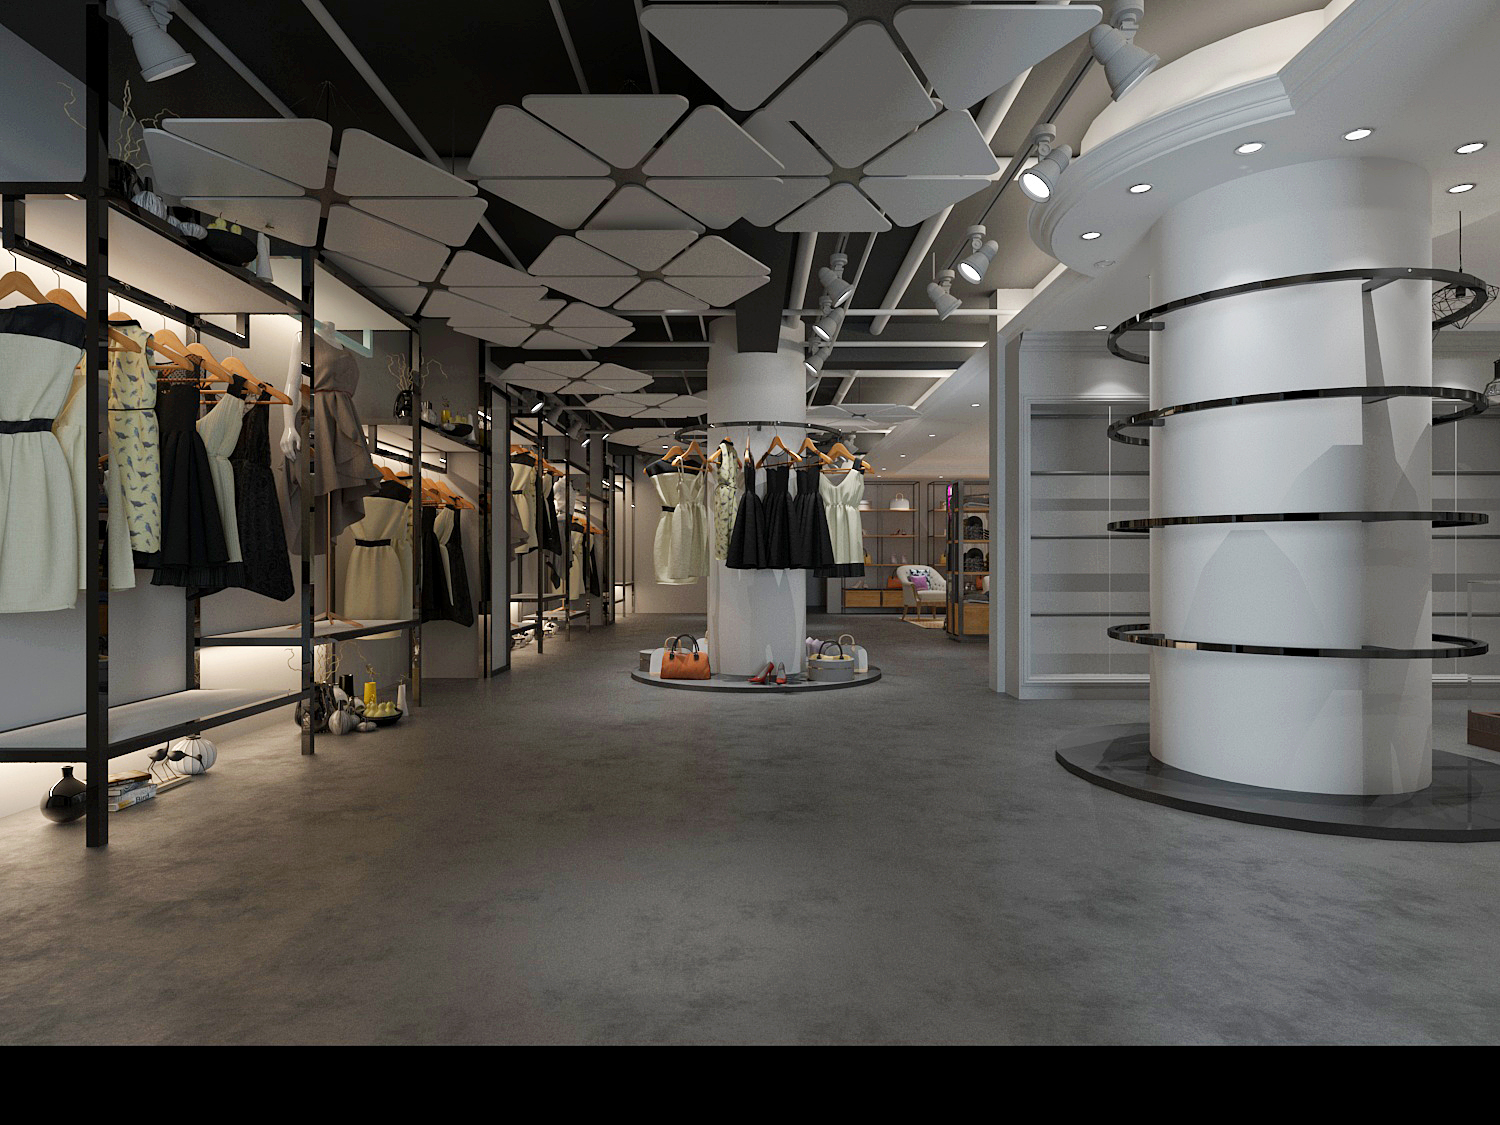 Elegante Department Store 5-Floor Project – Makeup Floor